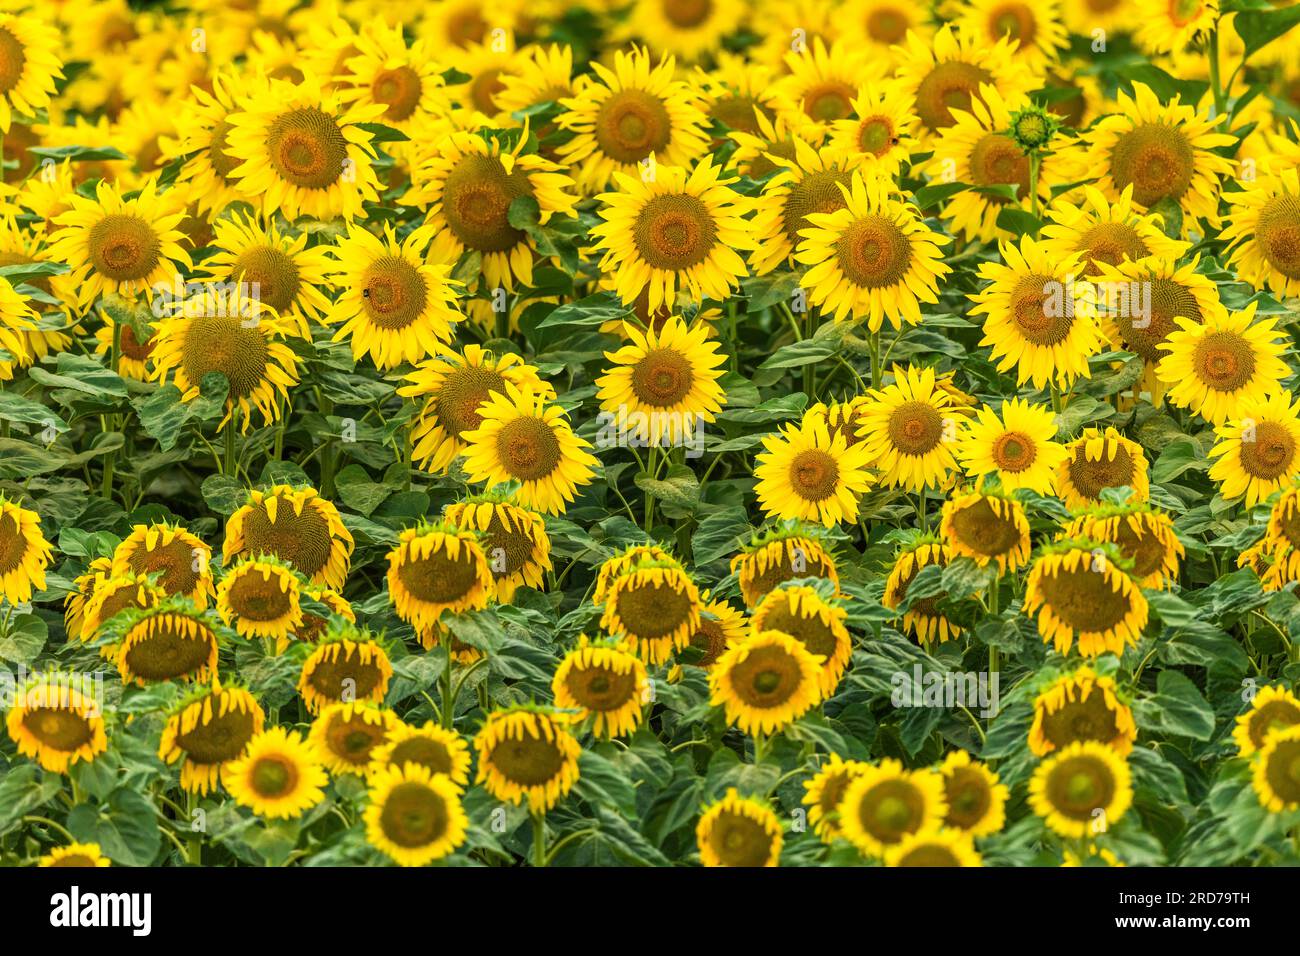 Sonnenblumen auf einem Ackerfeld. Bas-Rhin, Collectivite europeenne d'Alsace, Grand Est, Frankreich, Europa. Stockfoto